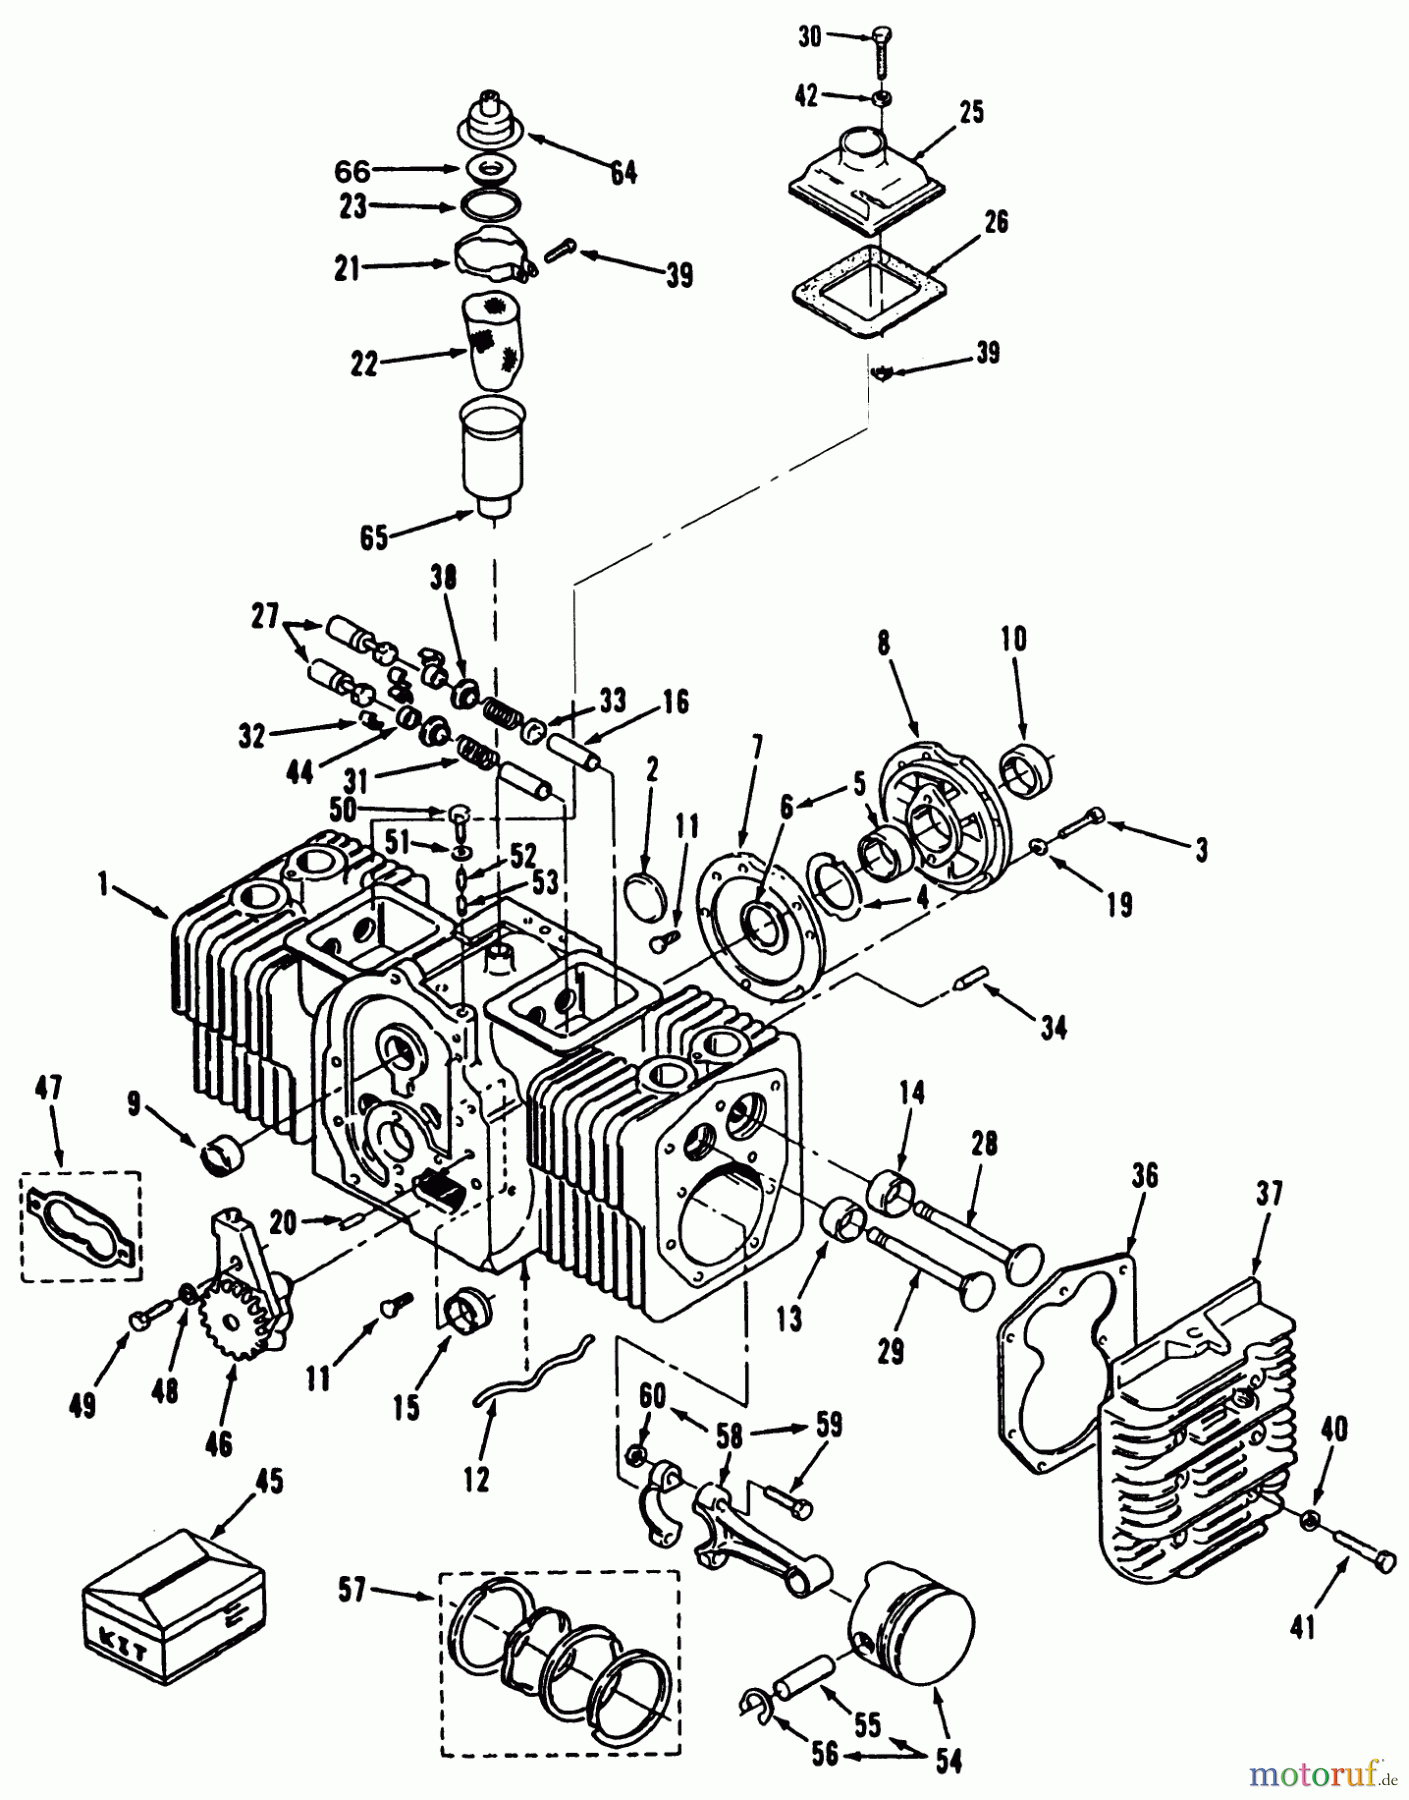  Toro Neu Mowers, Lawn & Garden Tractor Seite 1 31-12K804 (312-8) - Toro 312-8 Garden Tractor, 1992 (2000001-2999999) ENGINE POWER PLUS CYLINDER BLOCK